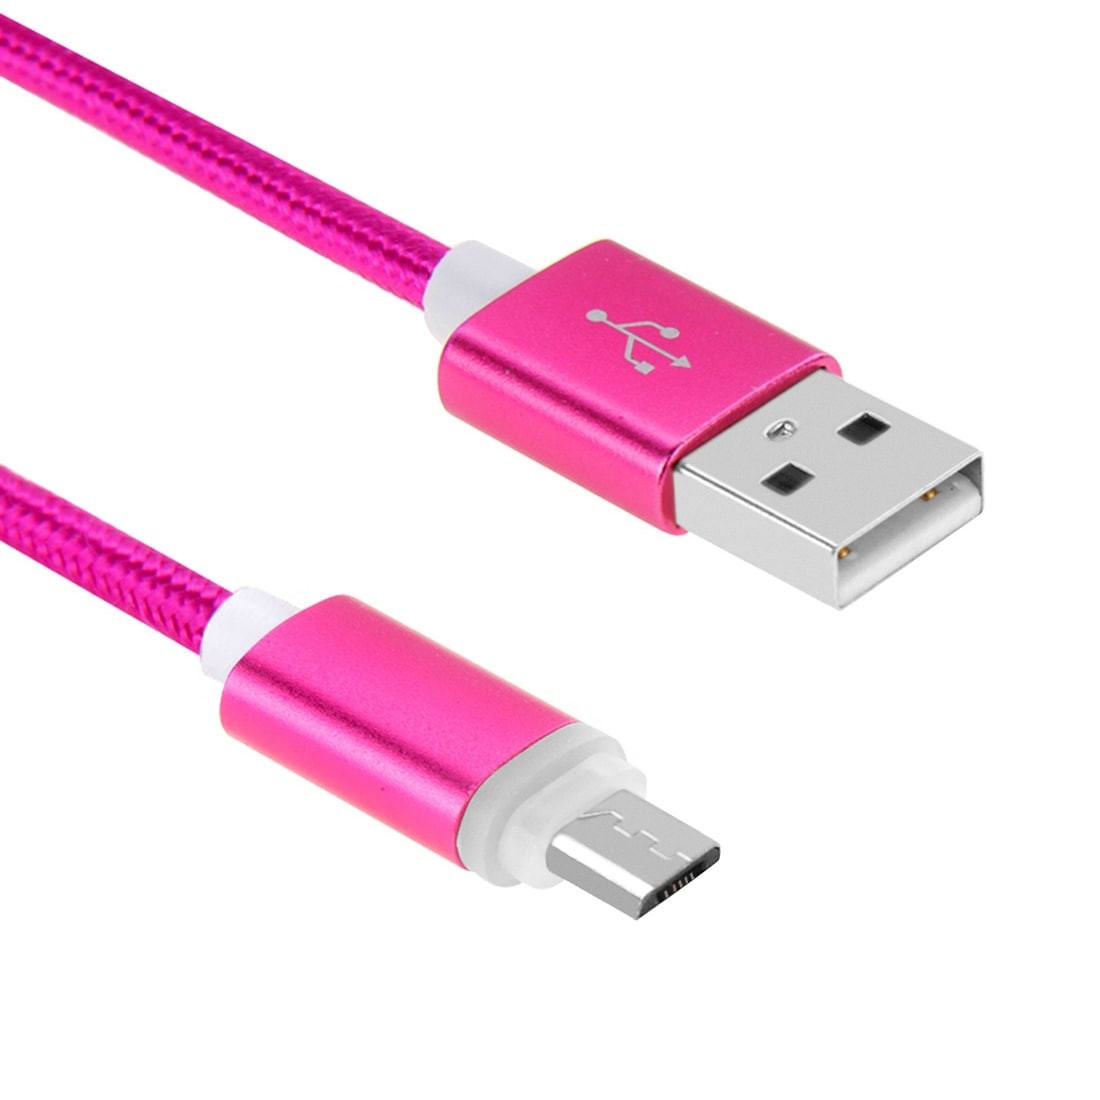 Kestävä kangaspäällysteinen Usb-kaapeli Micro USB metallipäällä - Suurpakkaus 8kpl eri värejä